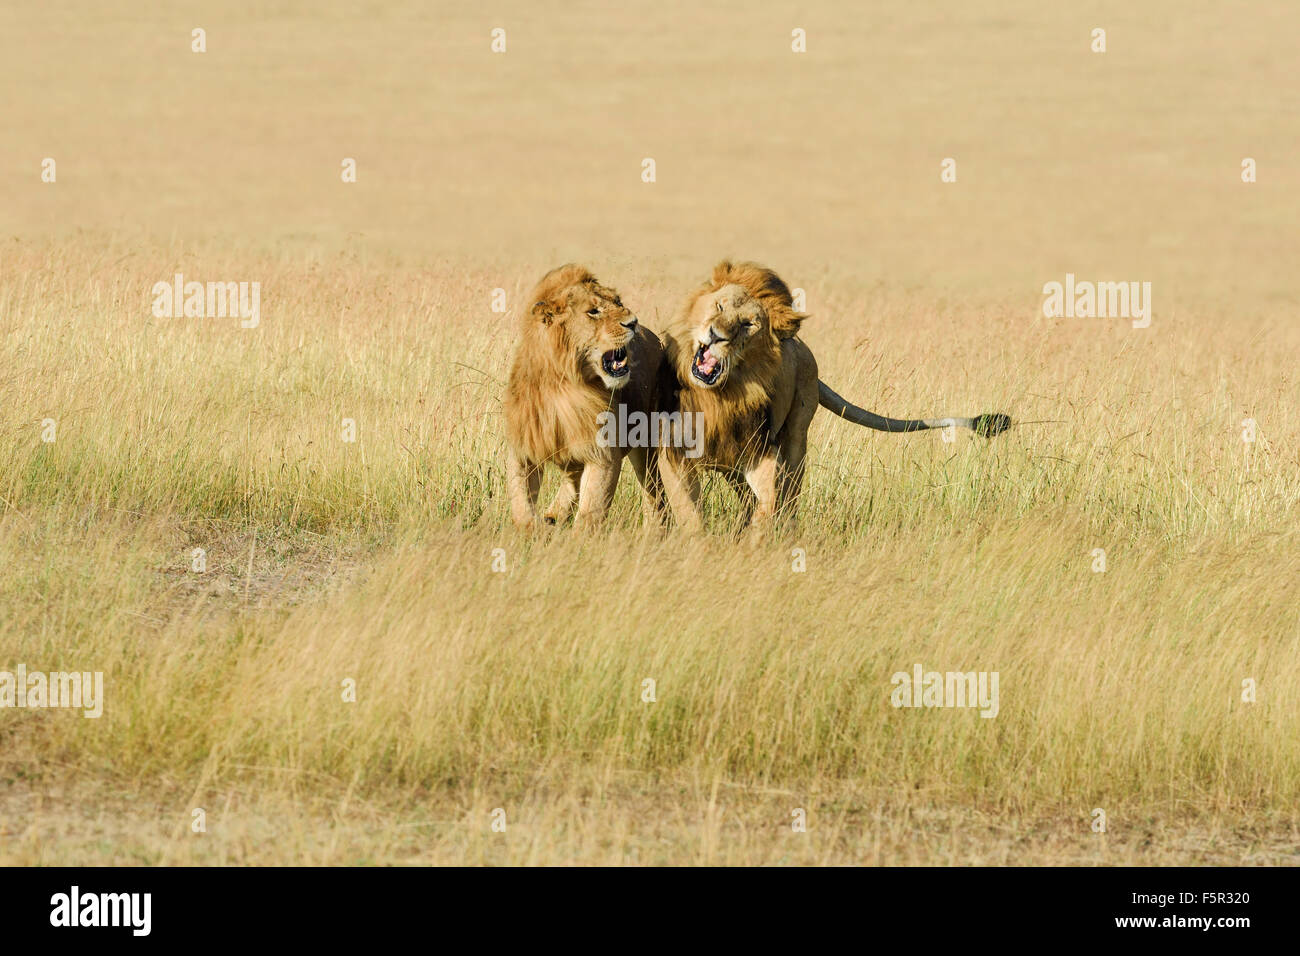 Deux hommes lions (Panthera leo), le fils et le père se battre pour la dominance, Masai Mara, Kenya, comté de Narok Banque D'Images